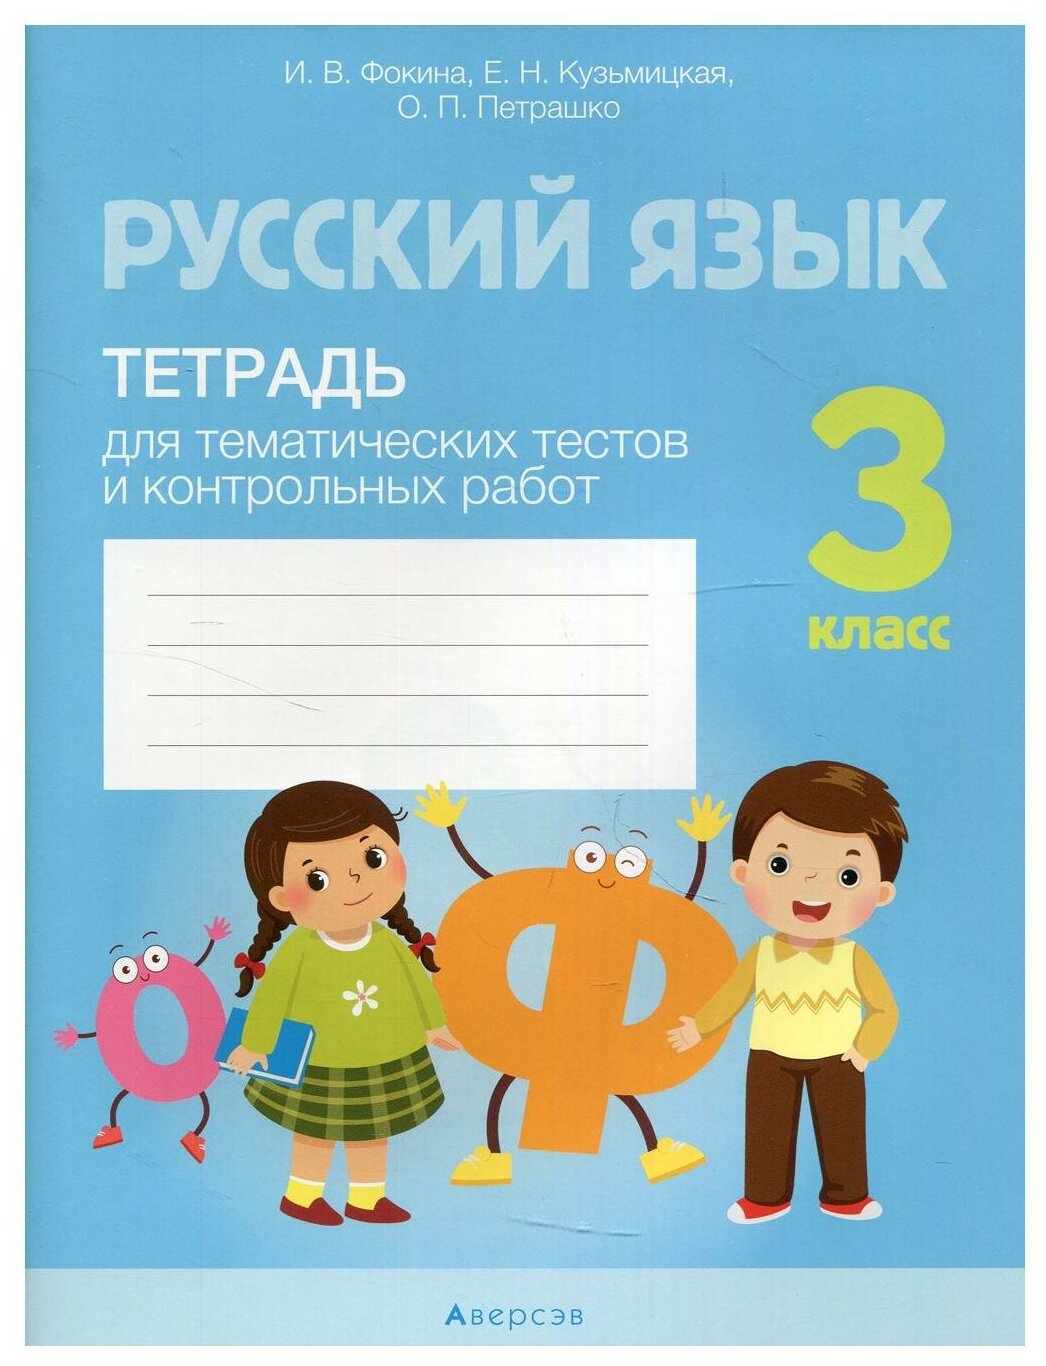 Русский язык. 3 класс: тетрадь для тематических тестов и контрольных работ